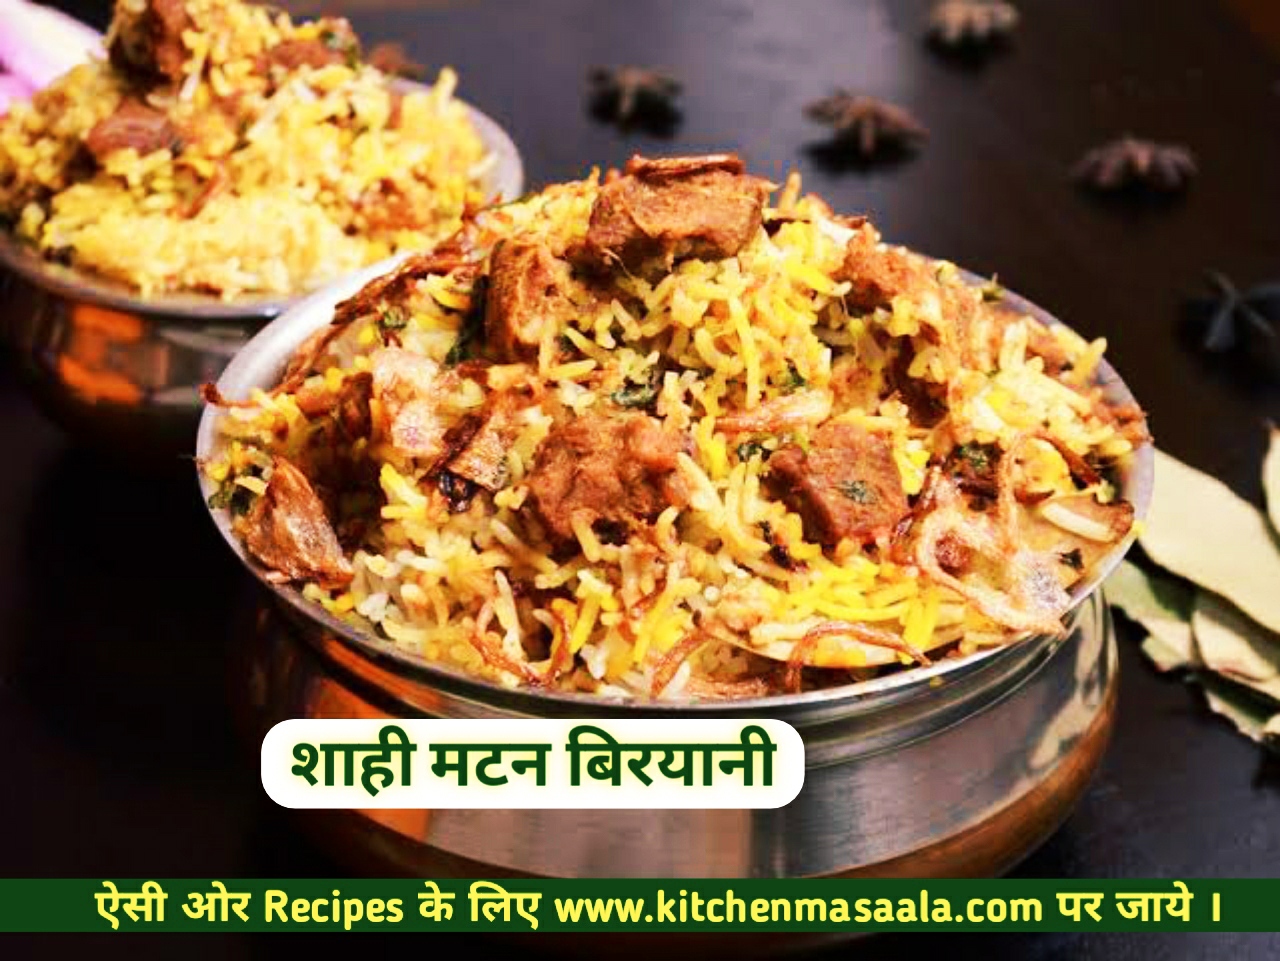 शाही मटन बिरयानी रेसिपी ,Mutton biryani Recipe in Hindi,शाही मटन बिरयानी फ़ोटो,Saahi matan biryani image,biryani image,